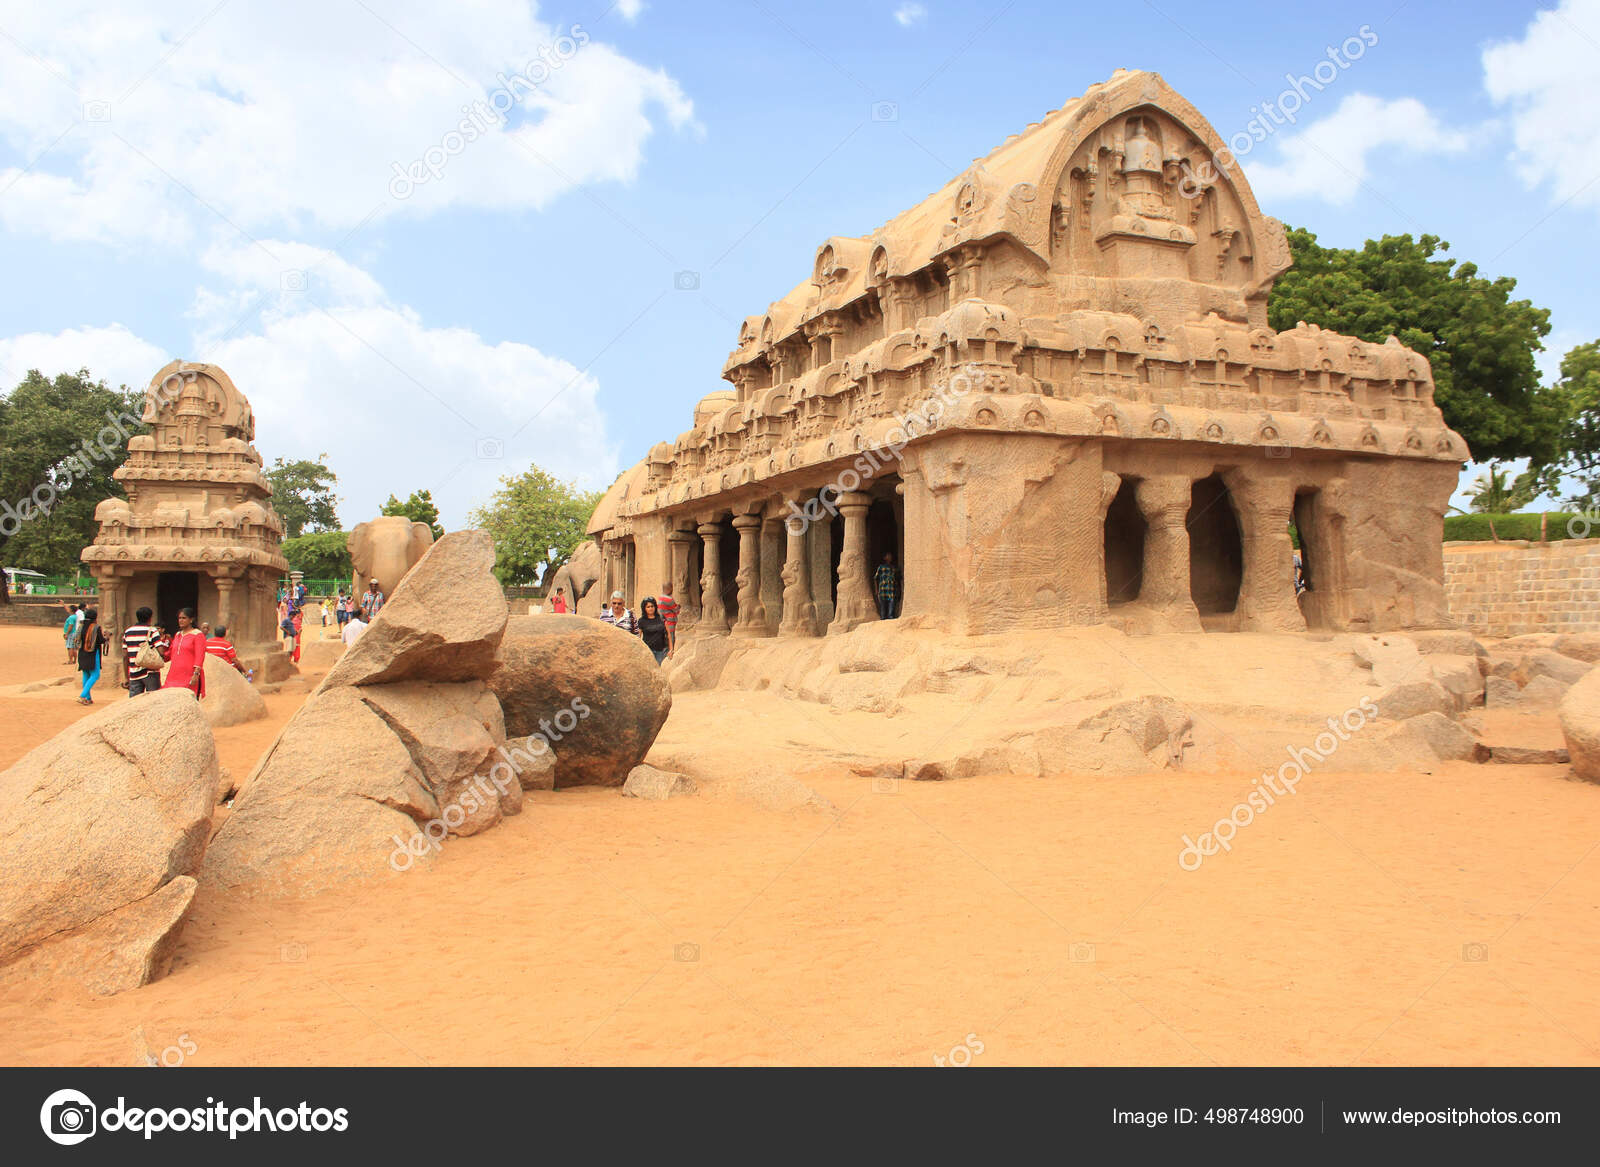 Mamallapuram | Map, Temple, & Facts | Britannica